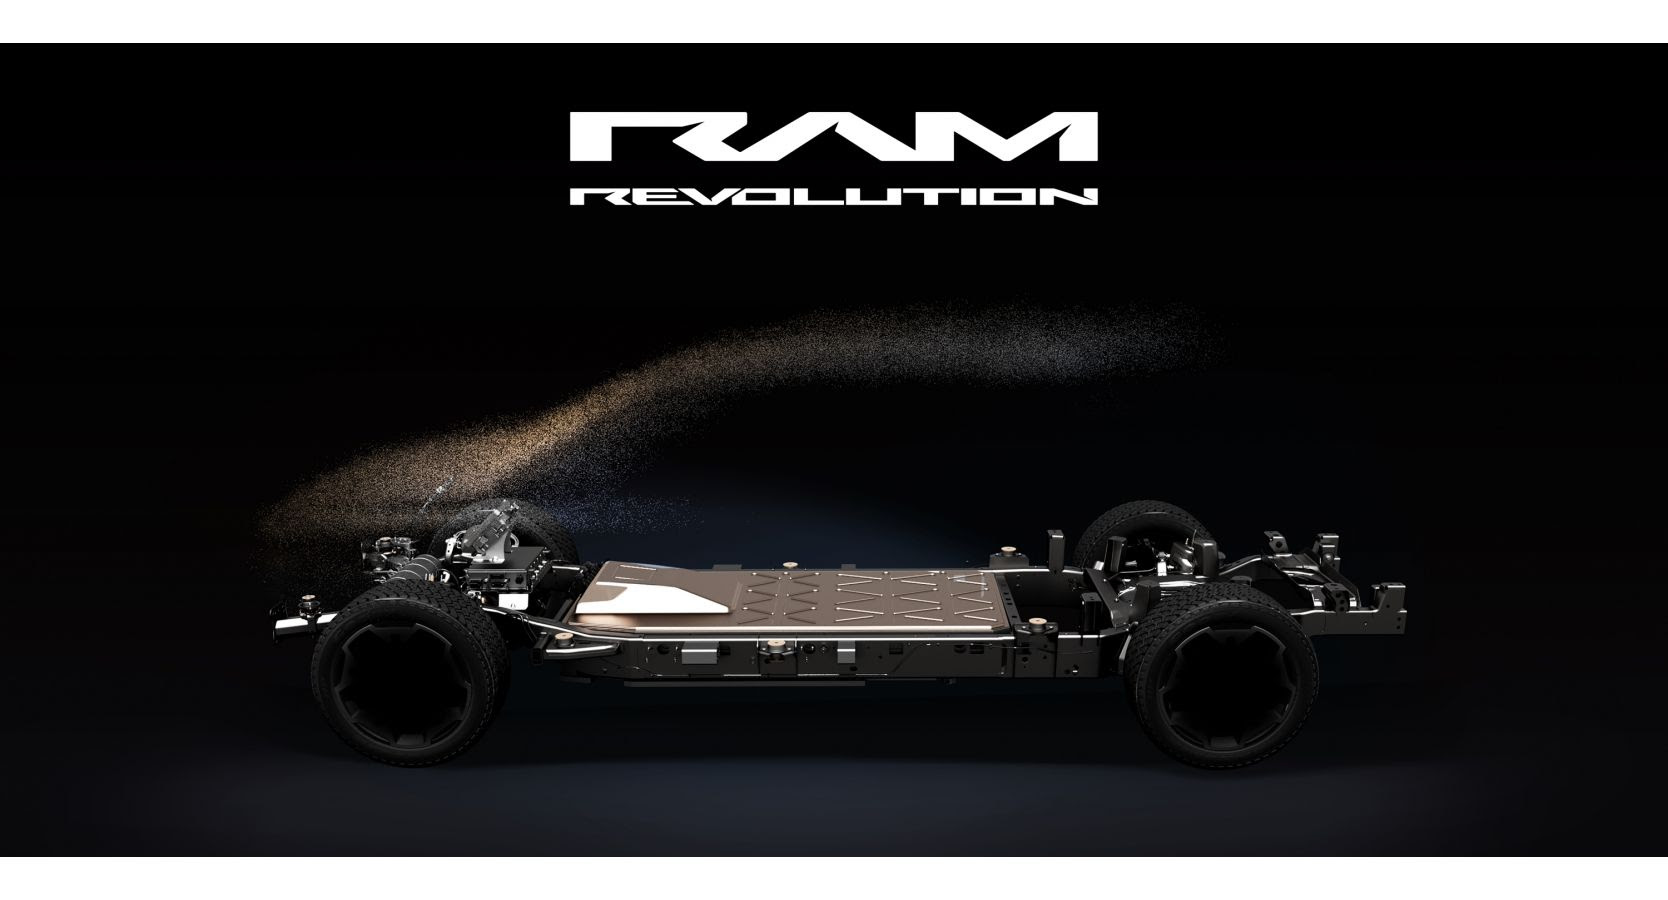 Ram Revolution invita a los consumidores a un “viaje” que revolucionará el mercado de las pickups